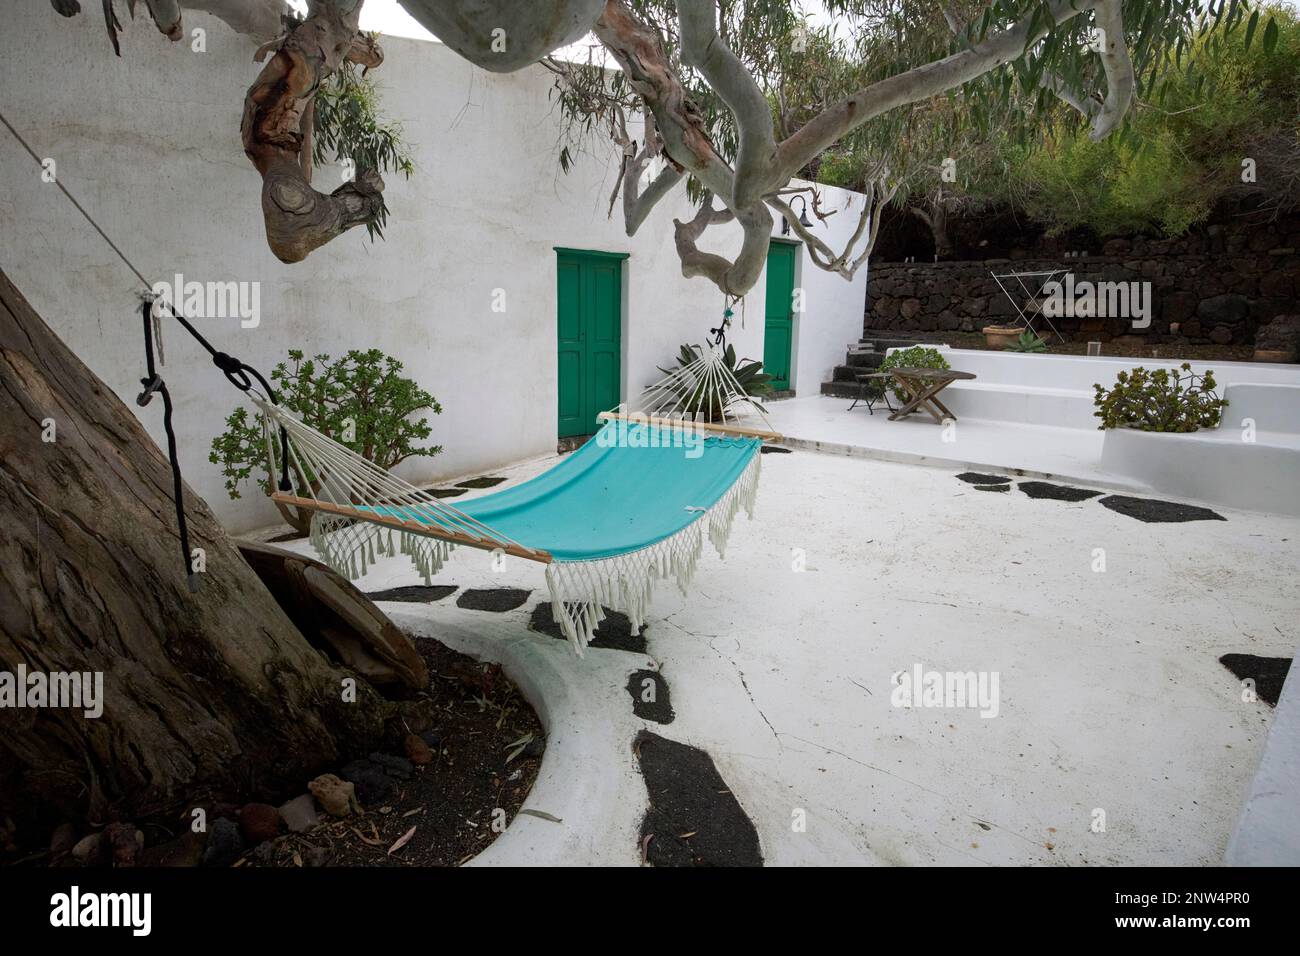 Hängematte, die von einem großen Eukalyptusbaum im Innenhof des traditionellen Finca-Bauernhauses hängt, weiß getünchte historische Wohnstätte in Lanzarote, Kanarische Inseln Stockfoto